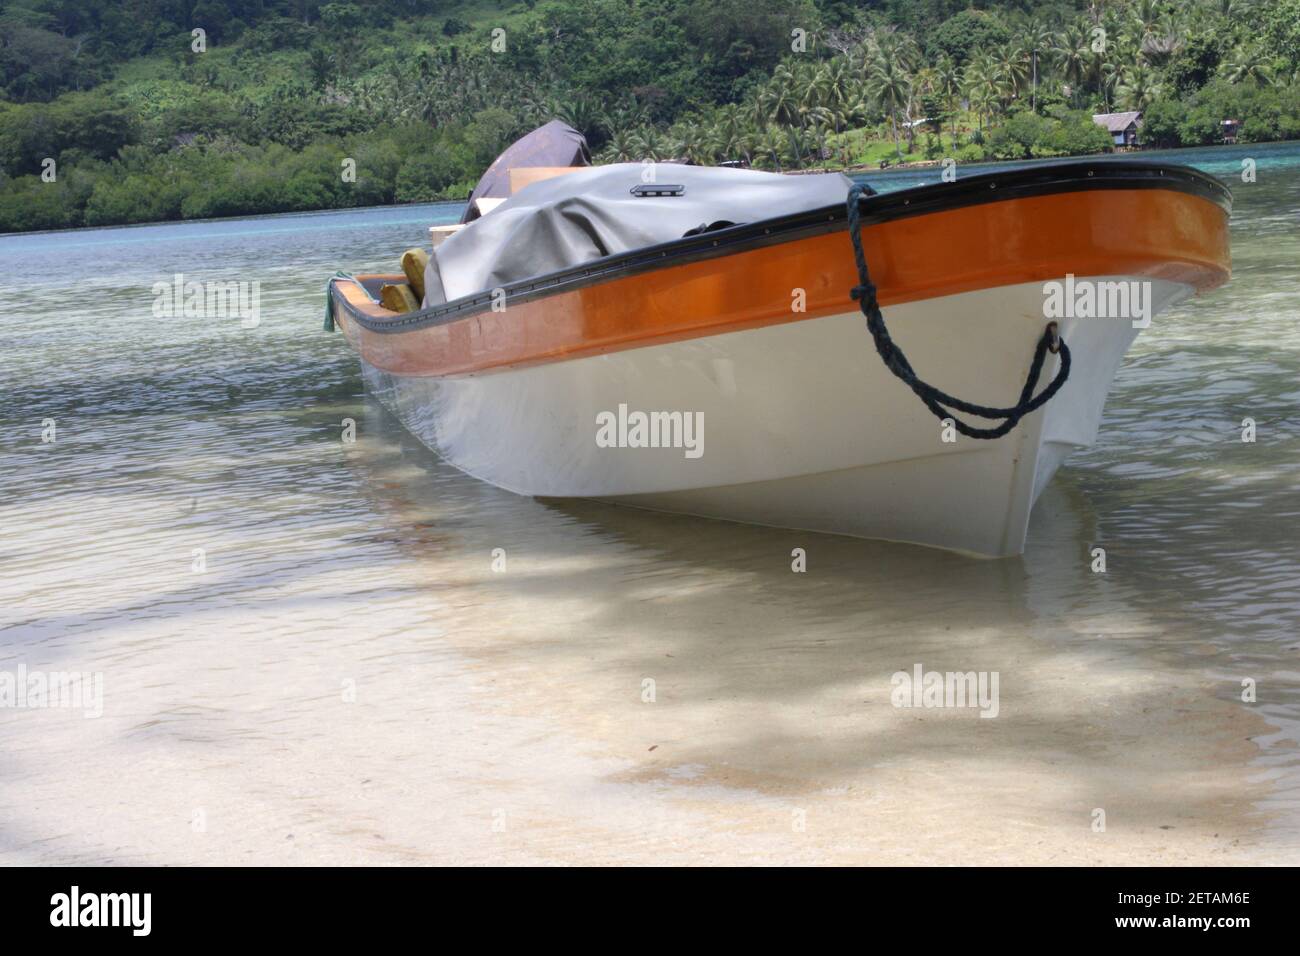 Ein Fiberglas-Schlauchboot liegt an den Ufern der Peli-Insel in der Provinz Manus, Papua-Neuguinea. Diese Boote werden von den Einheimischen auch Bananenboote genannt. Stockfoto